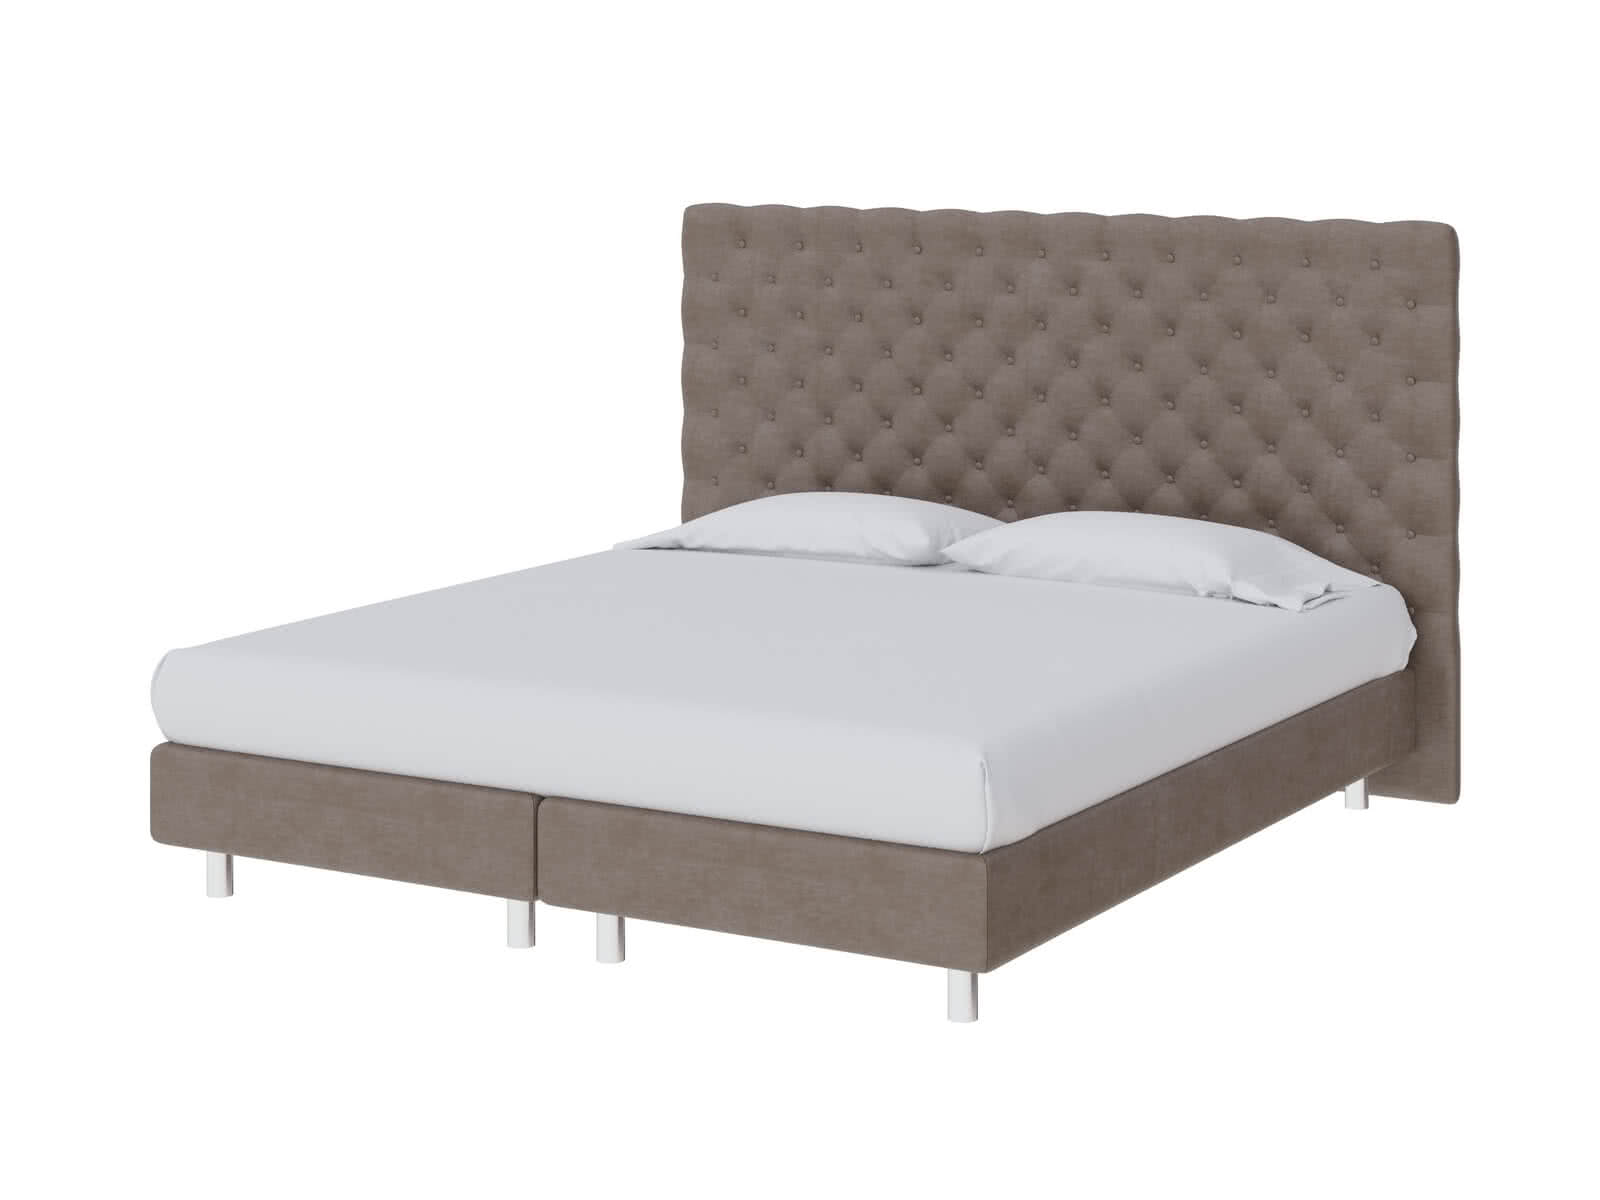 Купить кровать ProSon Кровать ProSon Europe Paris Lift, Лофти Лён Лофти Лён дешево на официальном сайте